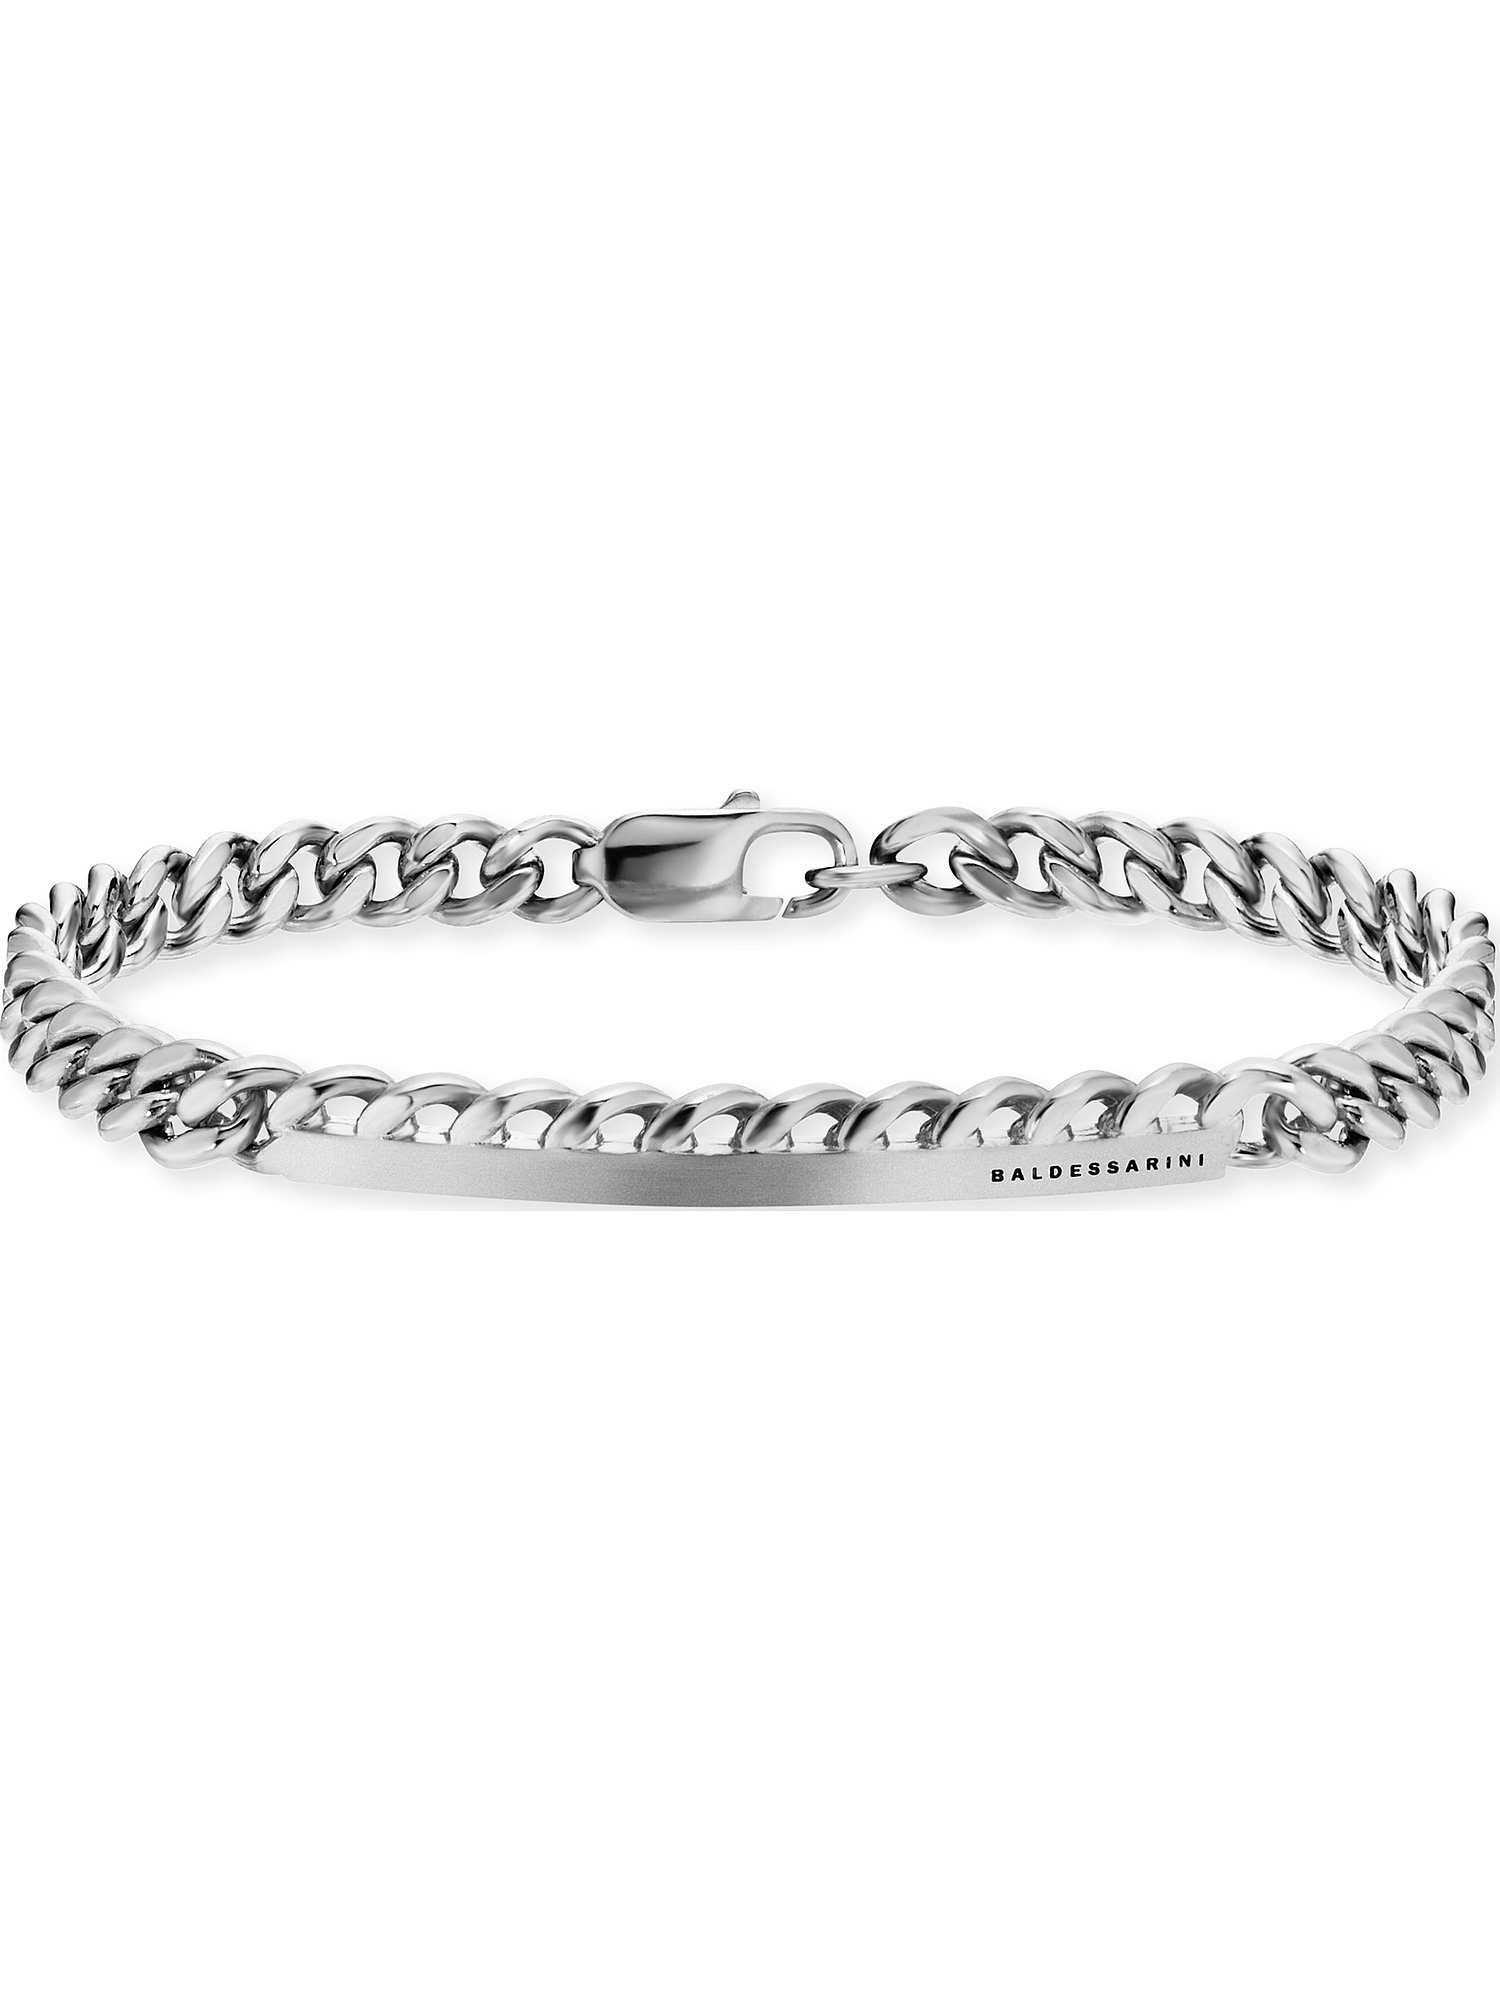 Produktverpackung ideal Baldessarini Modern, Herren-Armband 925er Geschenke für Silberarmband eleganter In Silber, BALDESSARINI